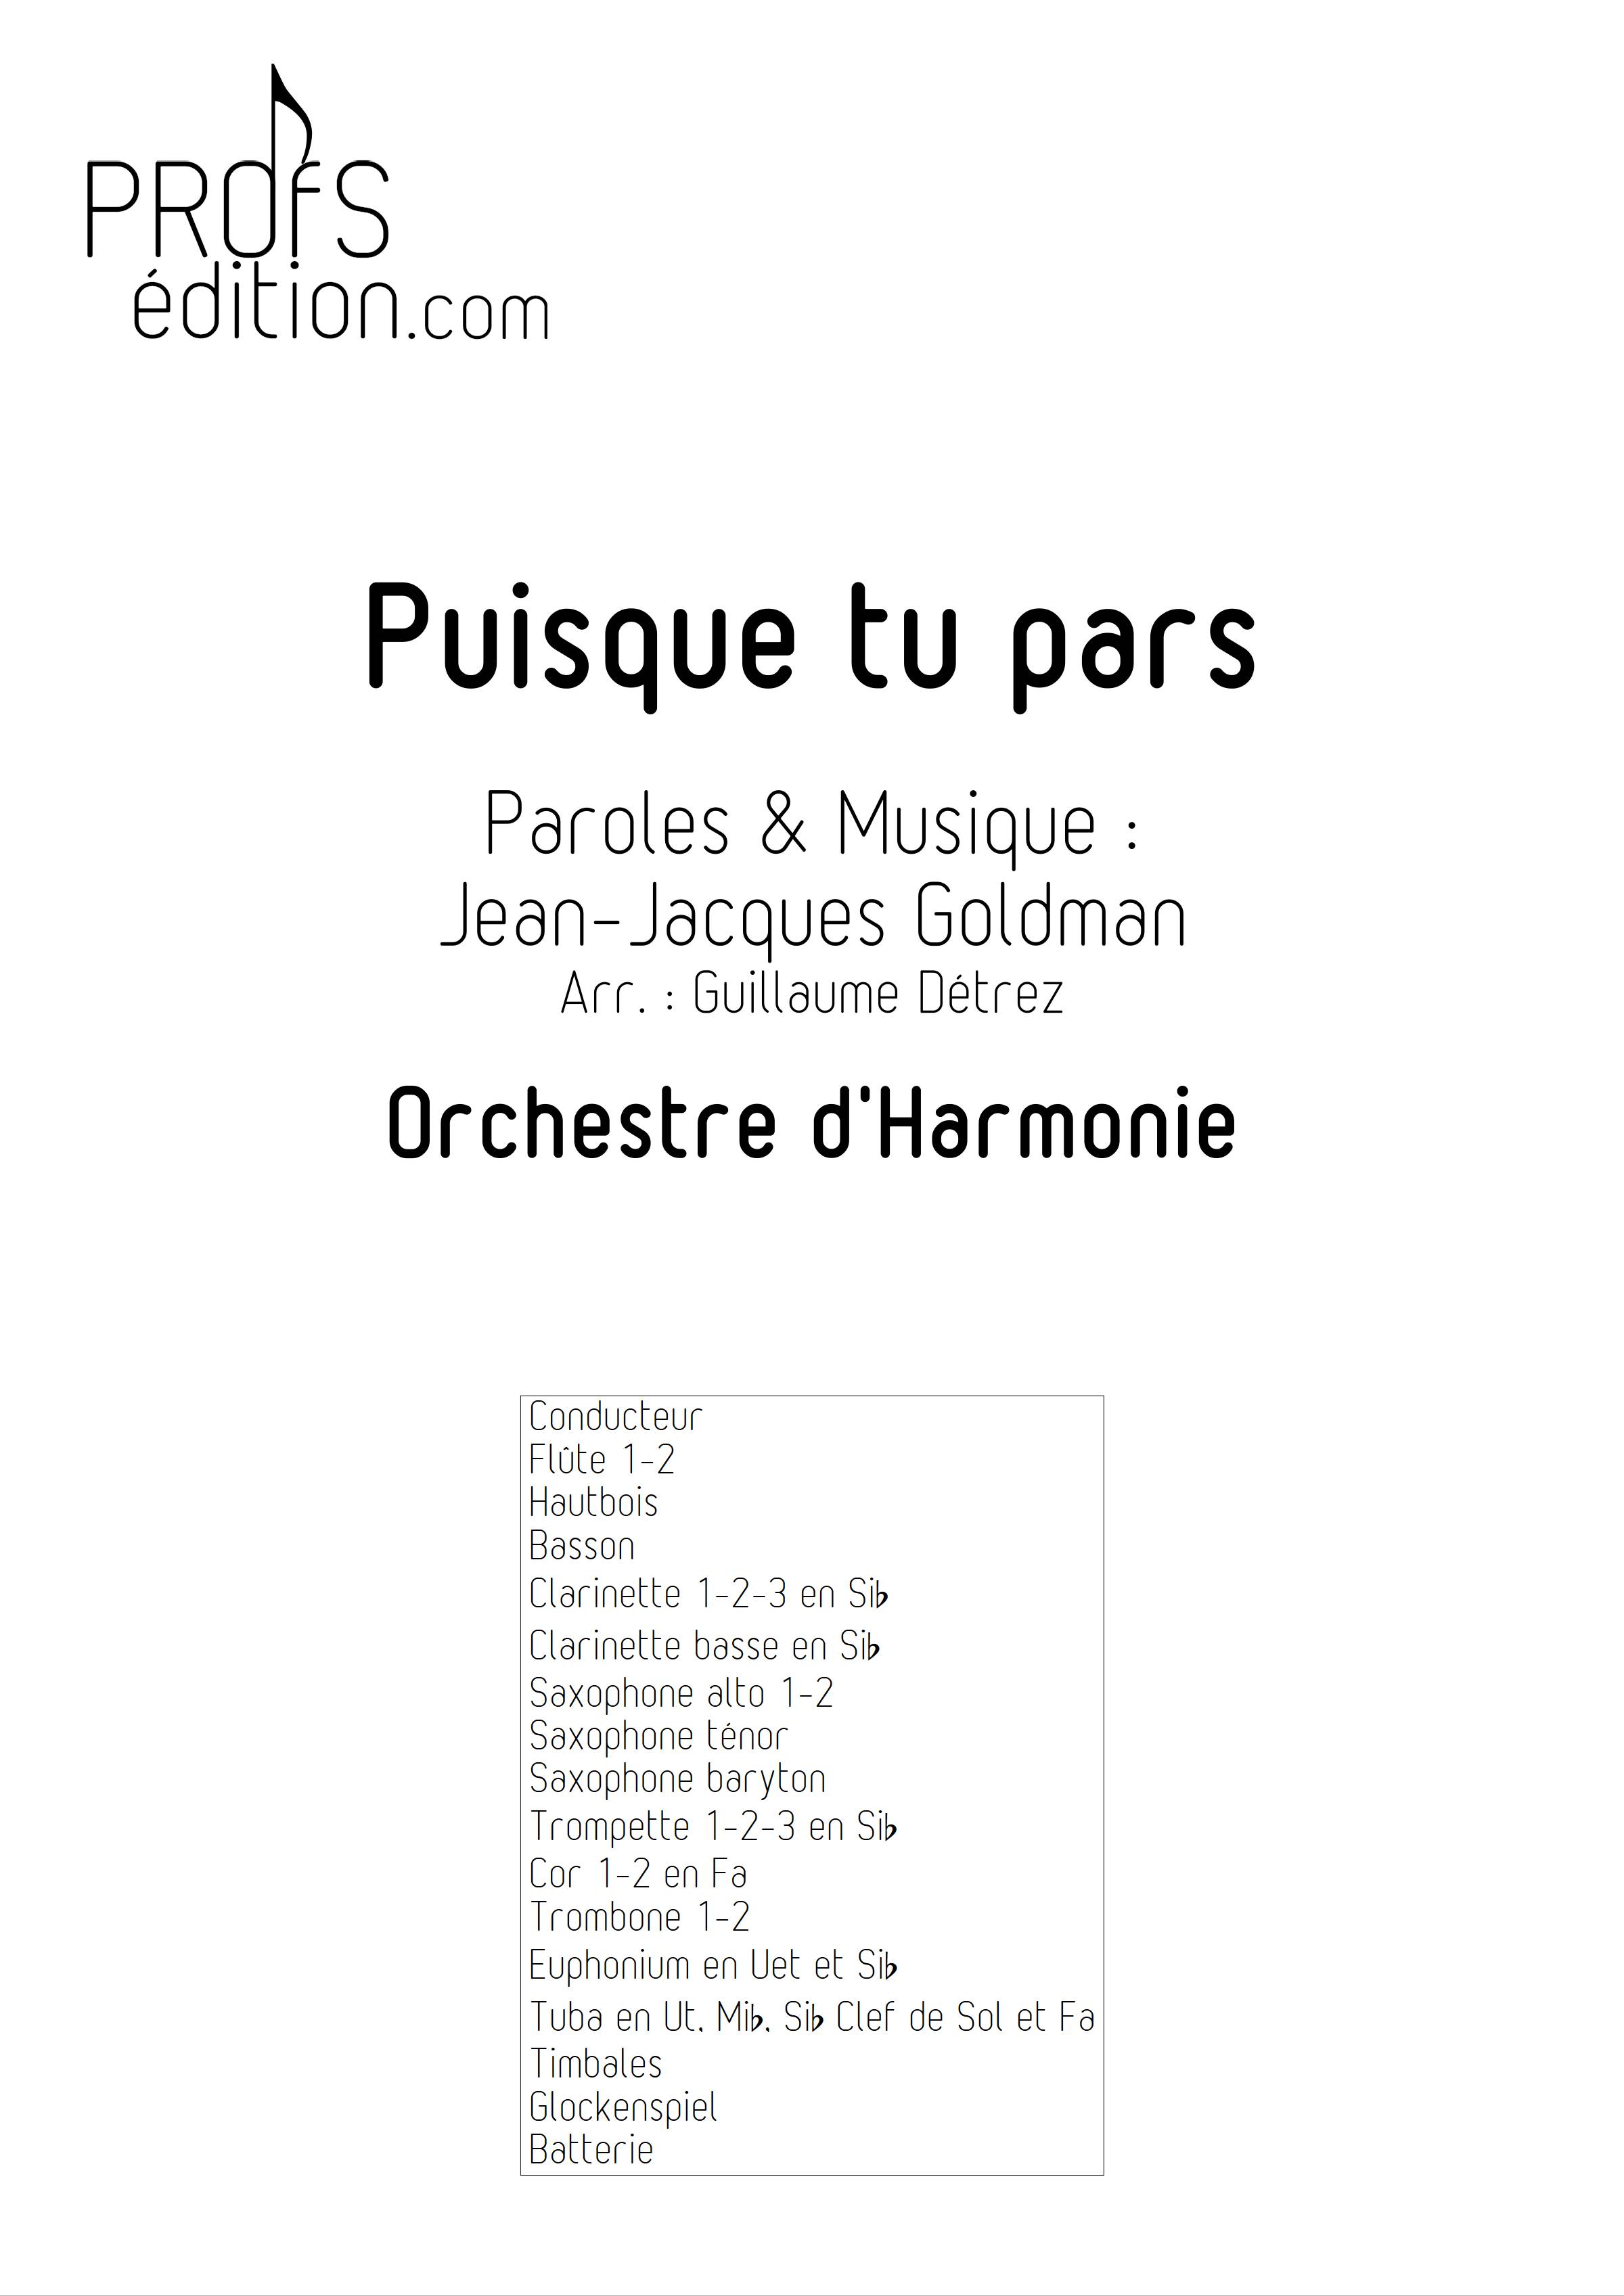 Puisque tu pars - Orchestre d'harmonie - GOLDMAN J. J. - page de garde